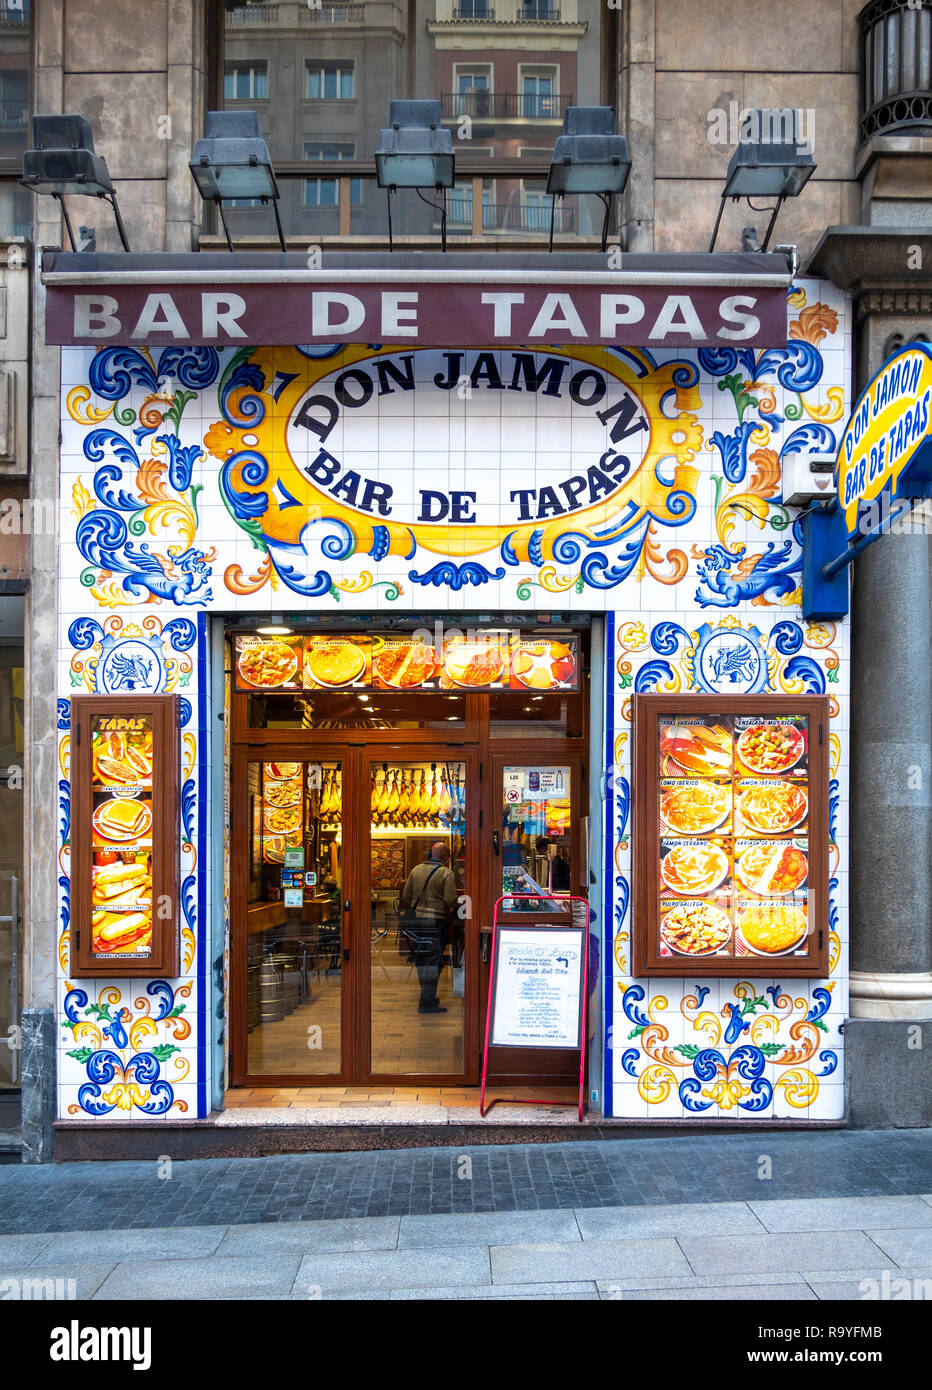 Madrid Don Jamon Bar de Tapas. Dekorative Glasierte keramische Fliesen auf traditionelle Tapas Bar auf der Gran Via in Madrid. Stockfoto